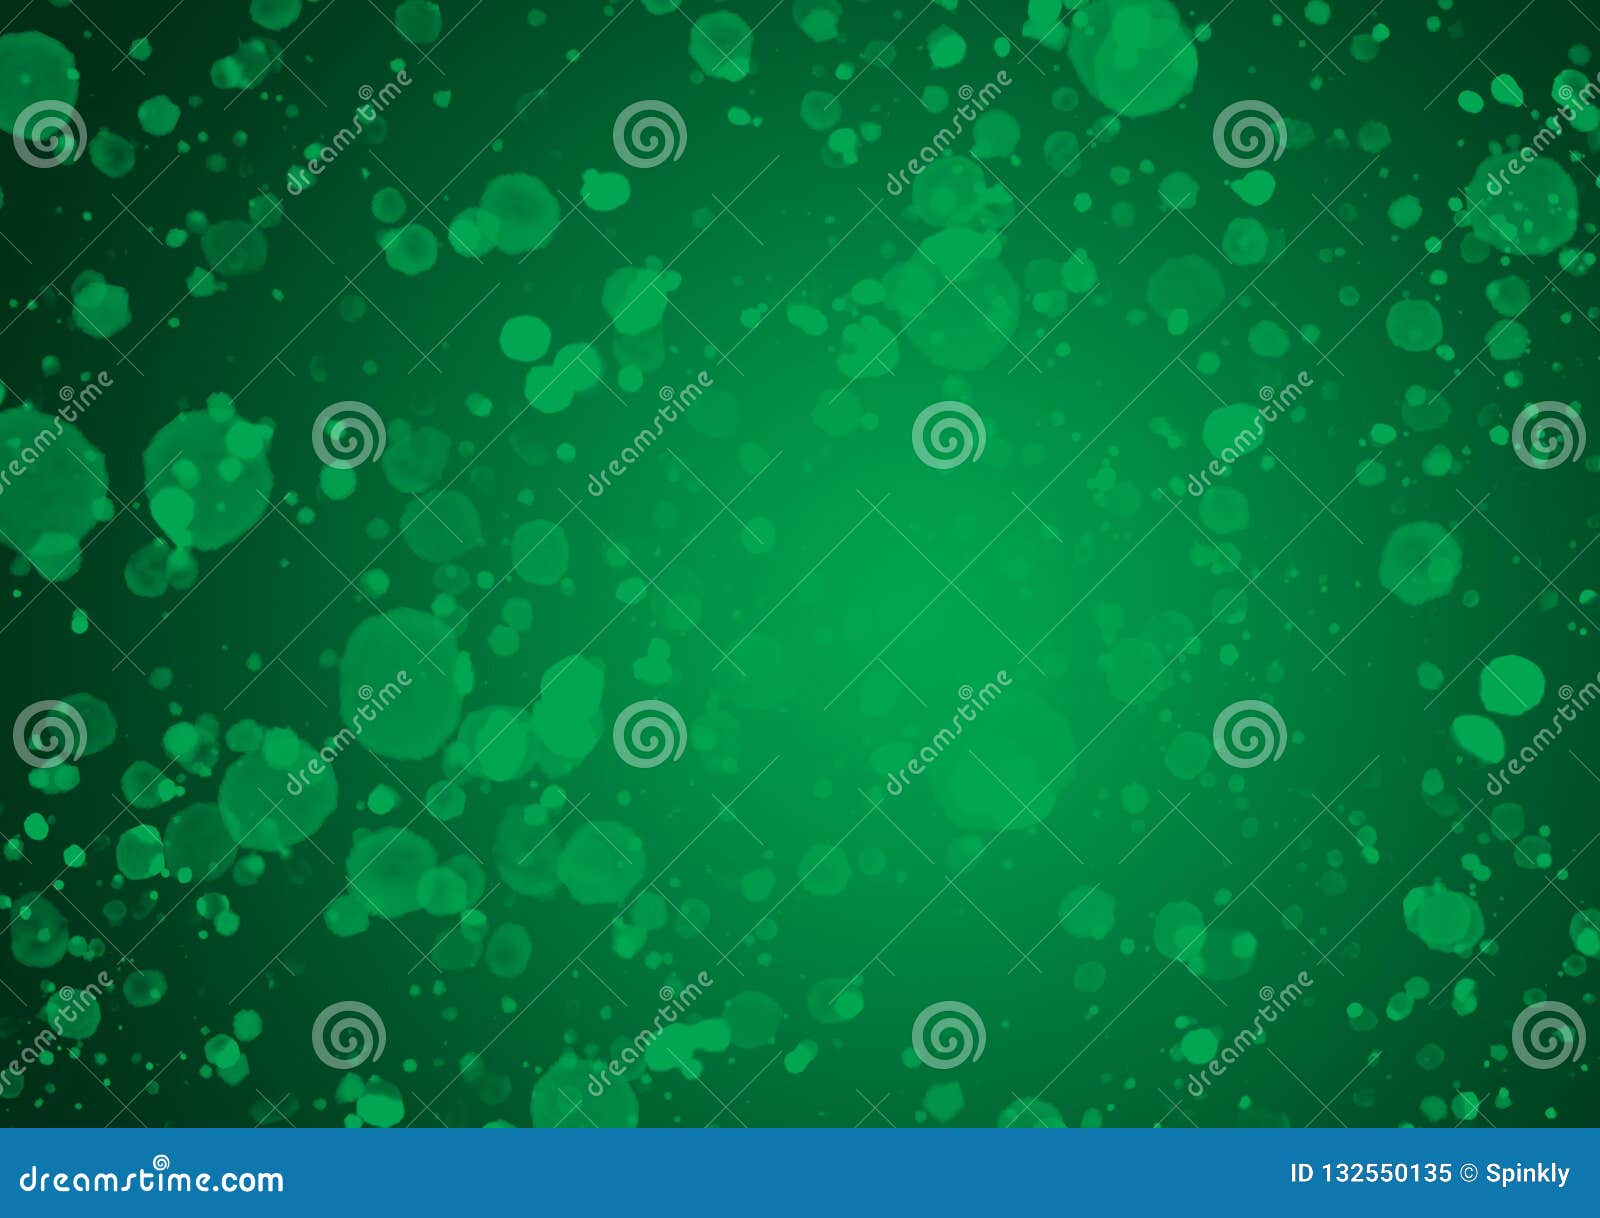 Green Splash Wallpaper Design Background Stock Illustration ...